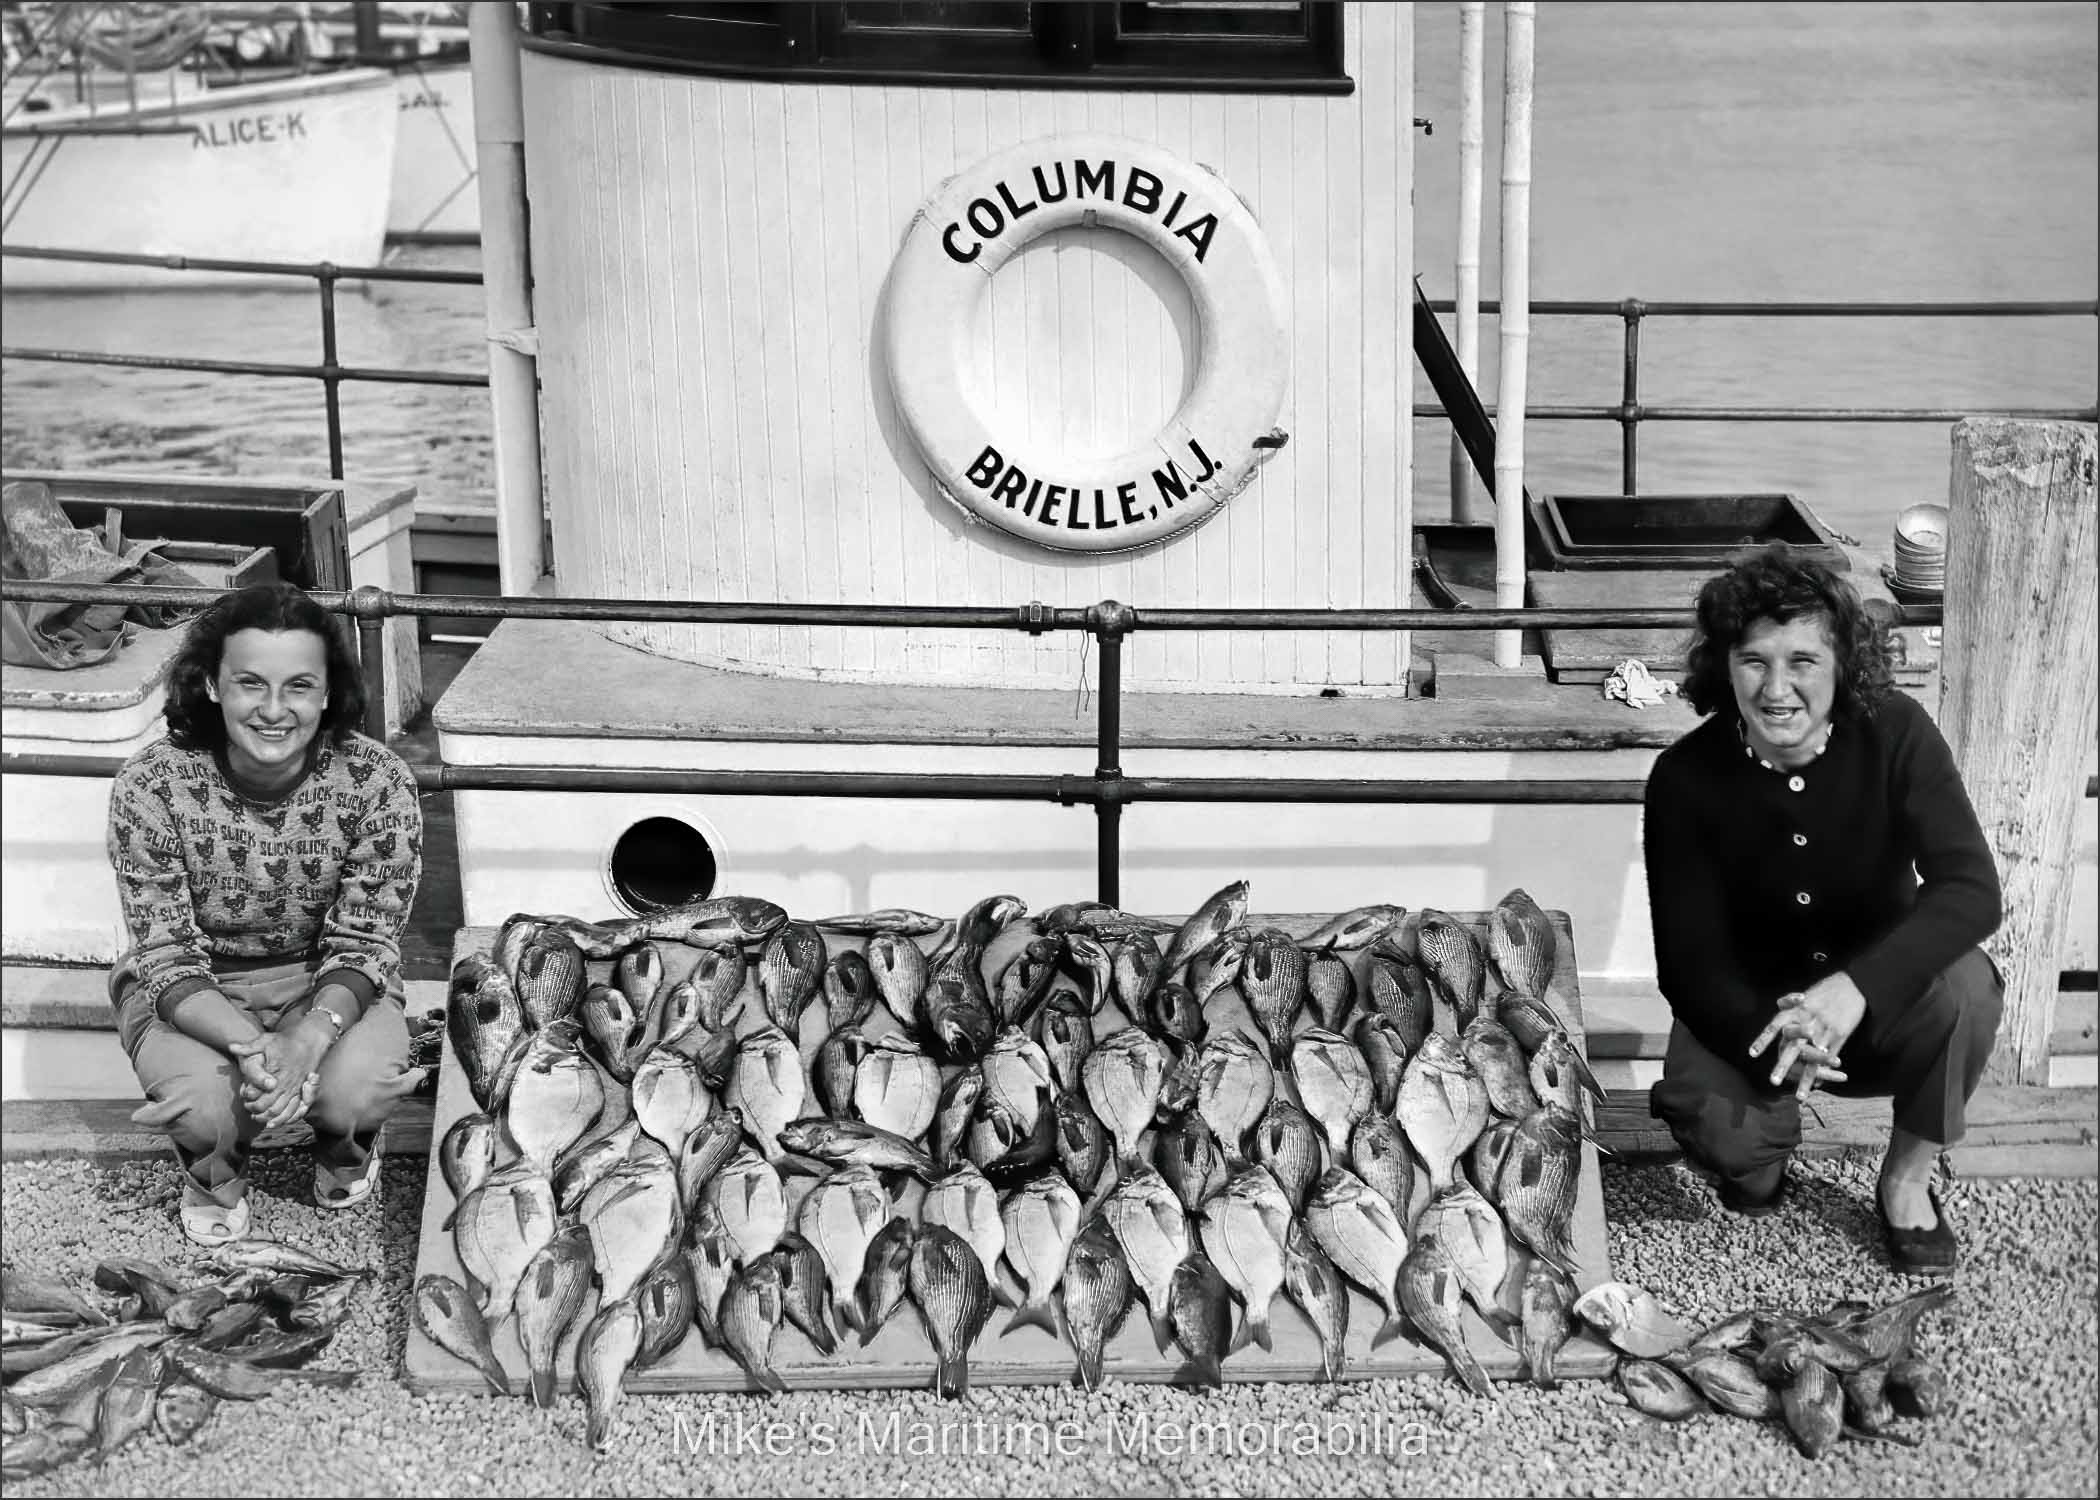 COLUMBIA, Brielle, NJ – 1954 "COLUMBIA" Porgy and Black Sea Bass catch circa 1954. An Edward Scheckler, Sea Girt, NJ photograph.